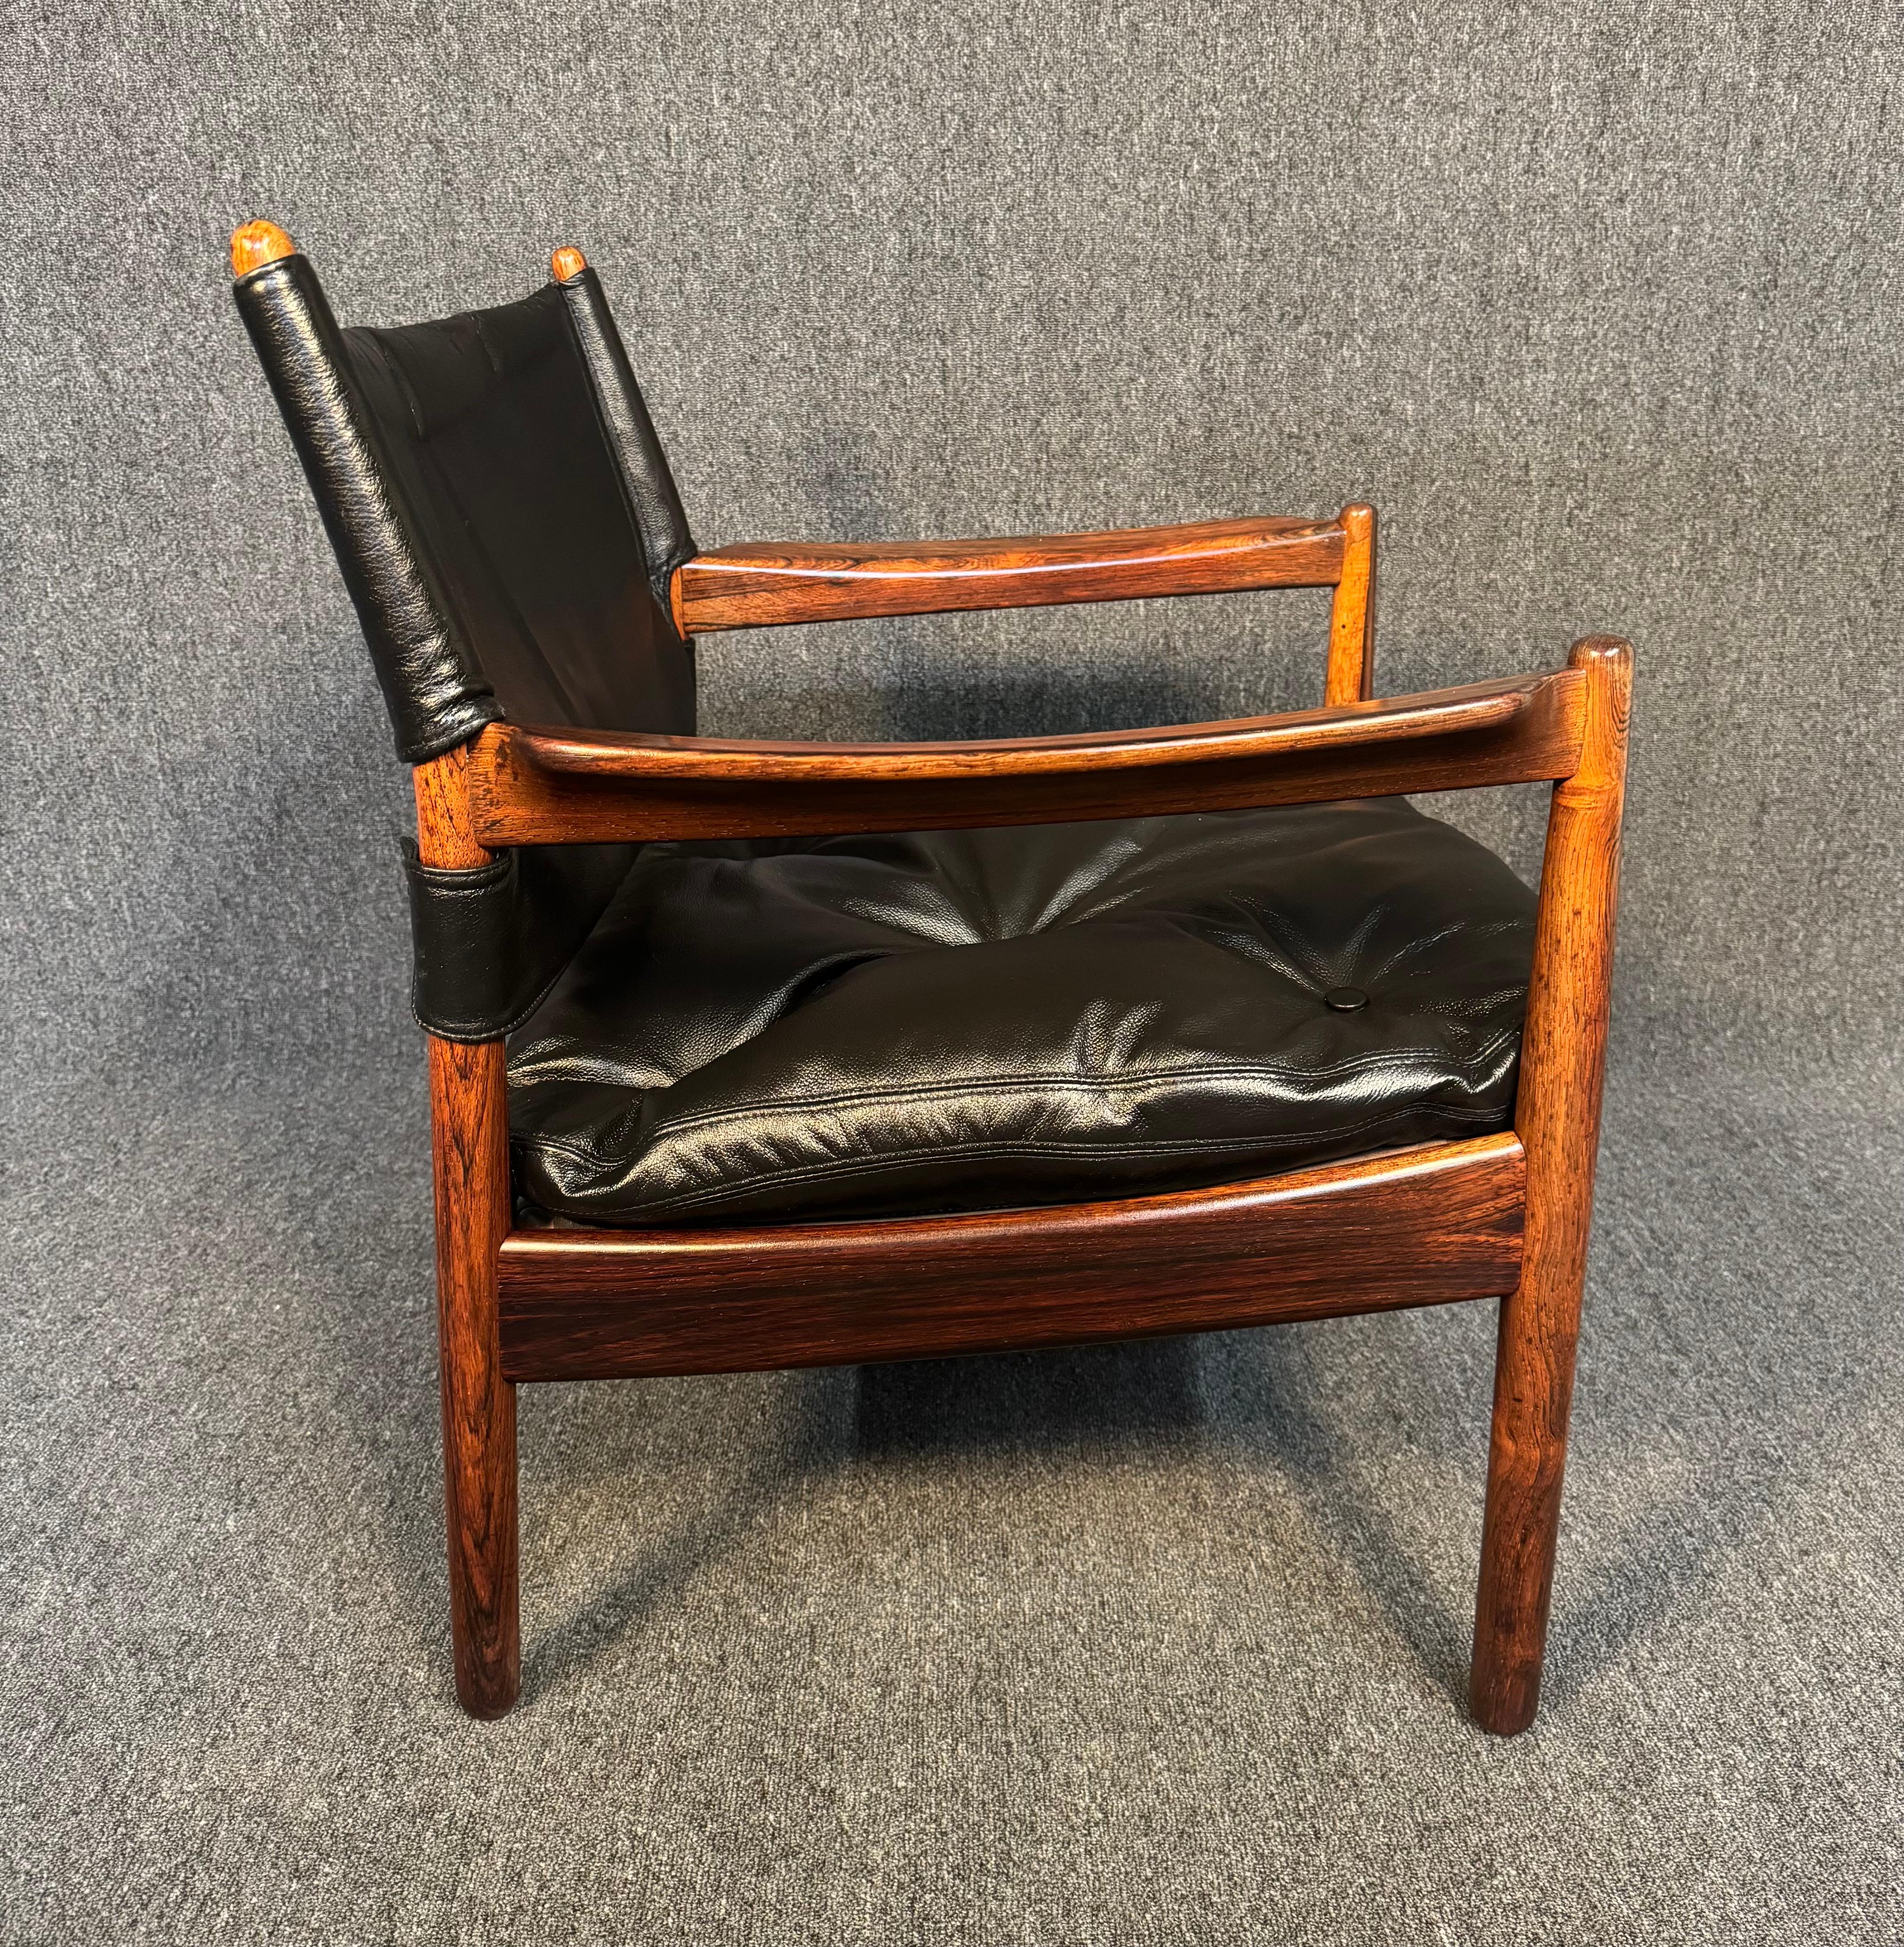 Hier ist ein seltener und schöner skandinavischer moderner Sessel aus Palisander und Leder, entworfen von Gunnar Myrstrand und hergestellt von Källermo in Schweden in den 1960er Jahren.
Dieser bequeme Stuhl, der kürzlich aus Europa nach Kalifornien